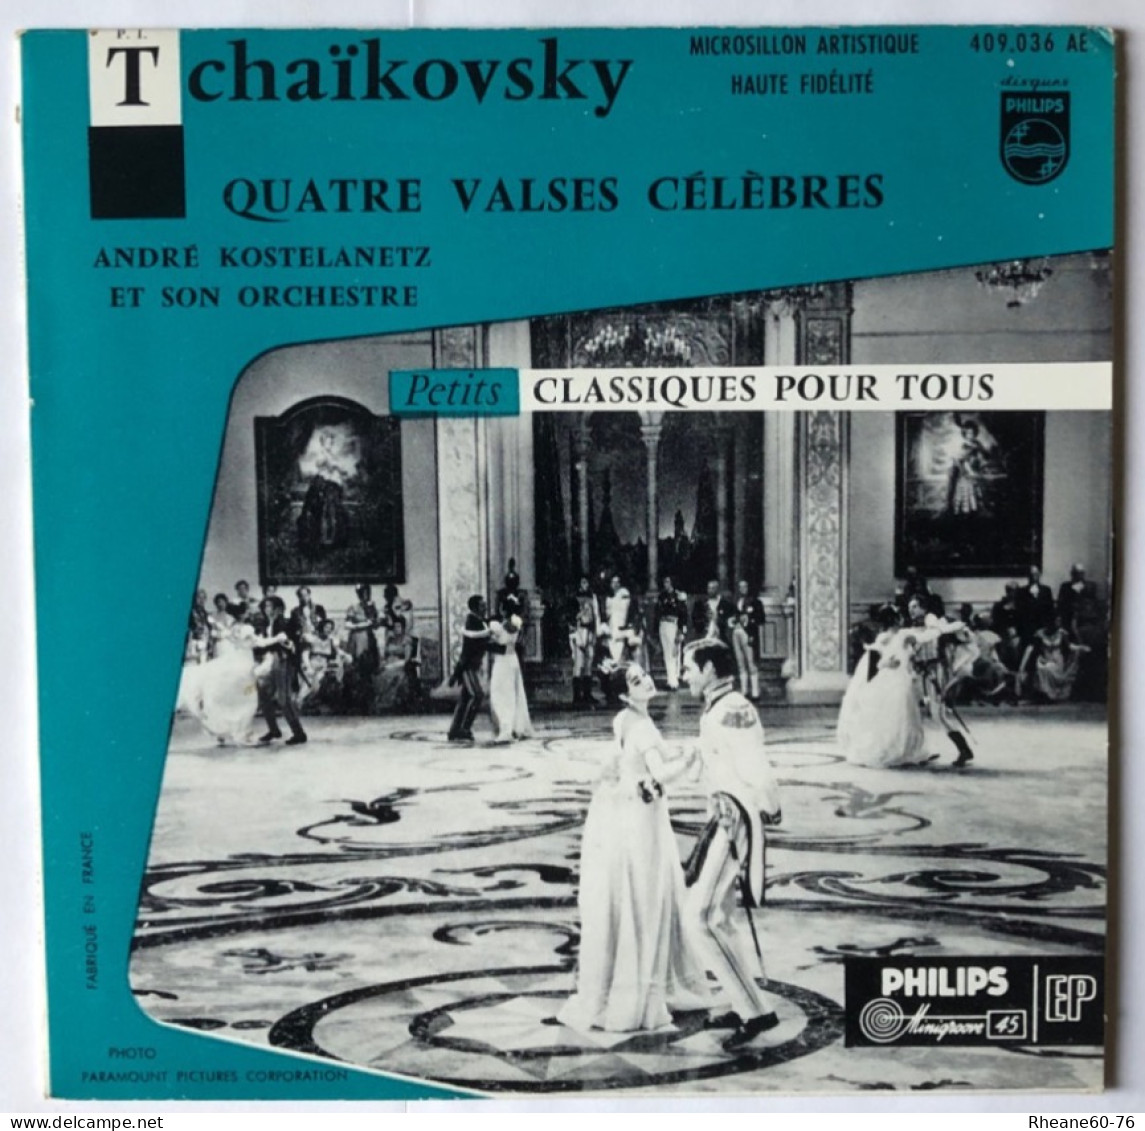 Philips 409.036 AE - 45T EP - Tchaïkovsky 4 Valses A Kostelanetz Et Son Orchestre- Microsillon Artistique Haute Fidélité - Special Formats